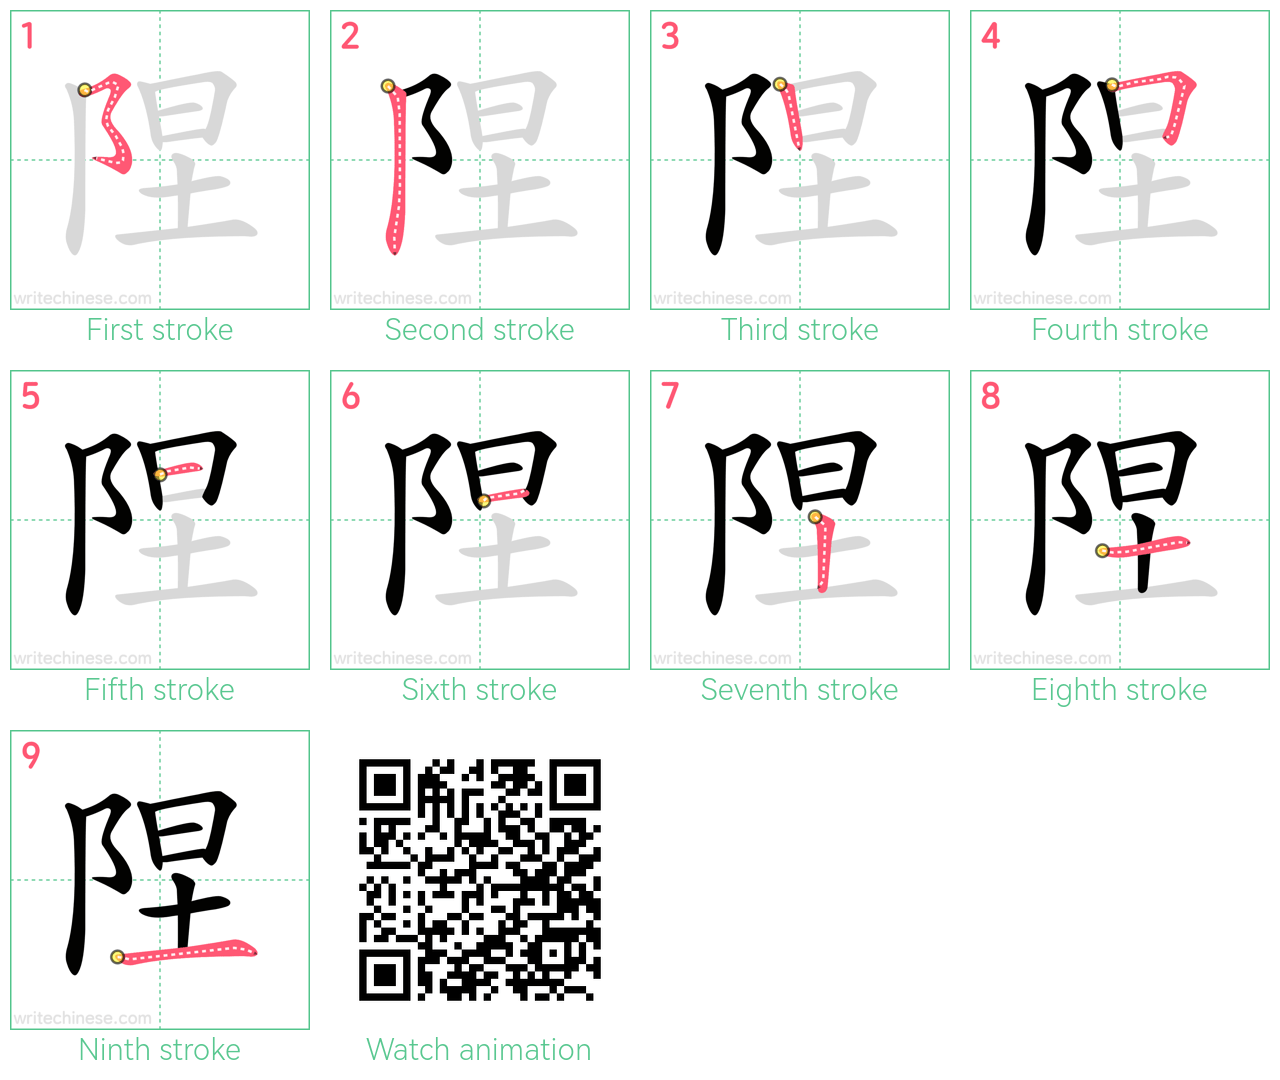 陧 step-by-step stroke order diagrams